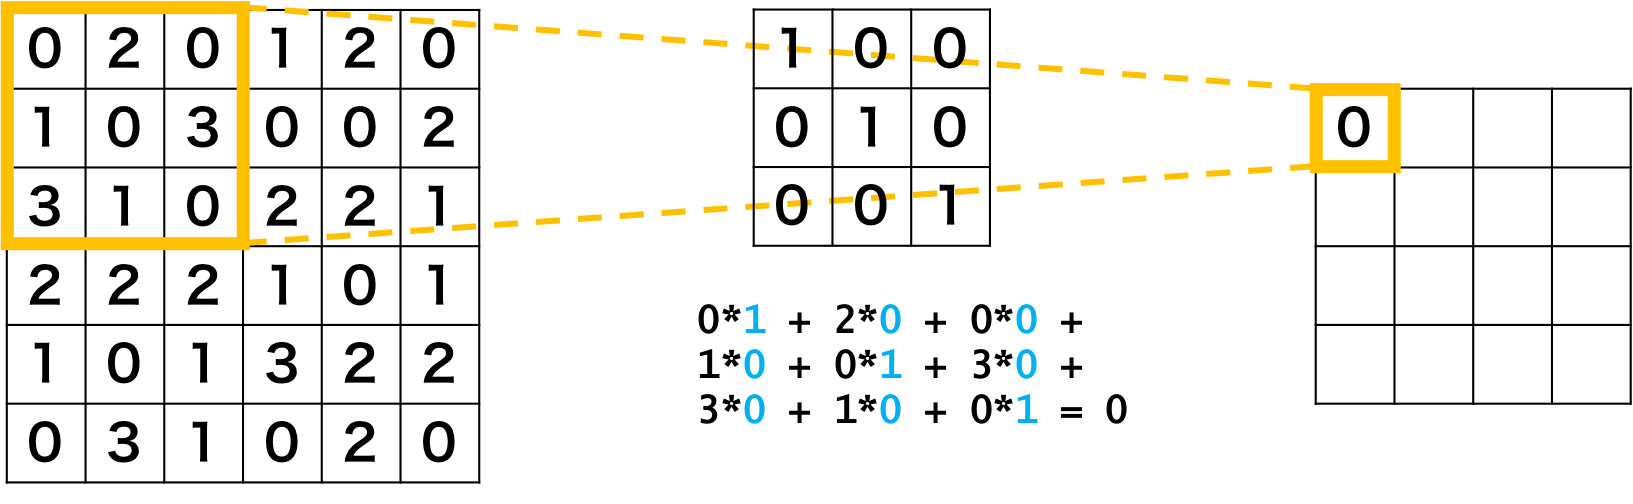 畳み込みニューラルネットワークの畳み込み層の例1